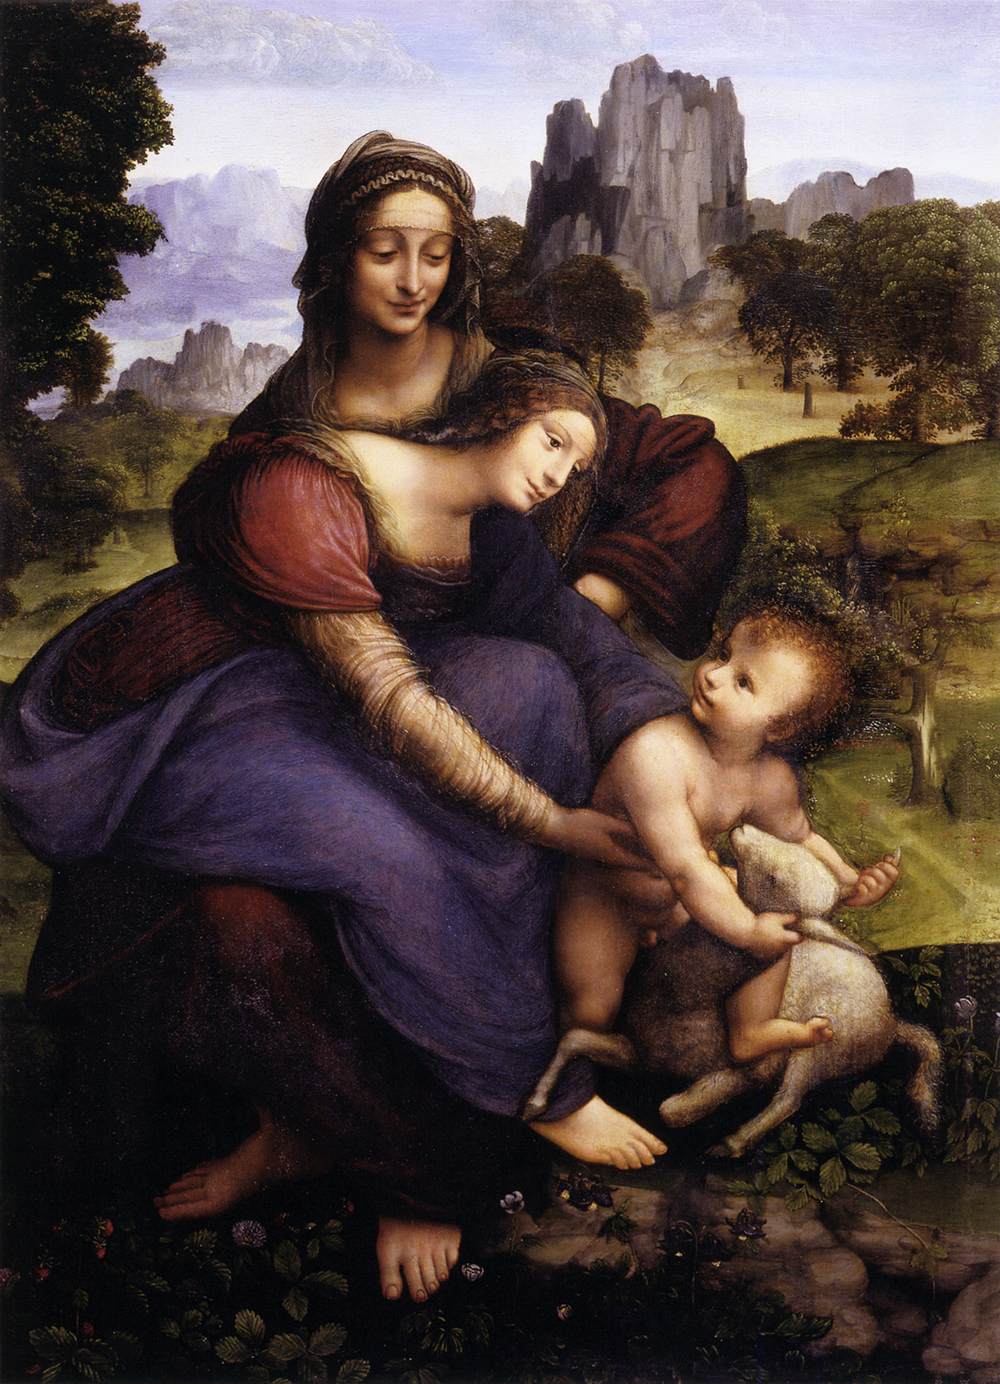 Santa Ana med jomfruen og barnet, der omfavner et lam